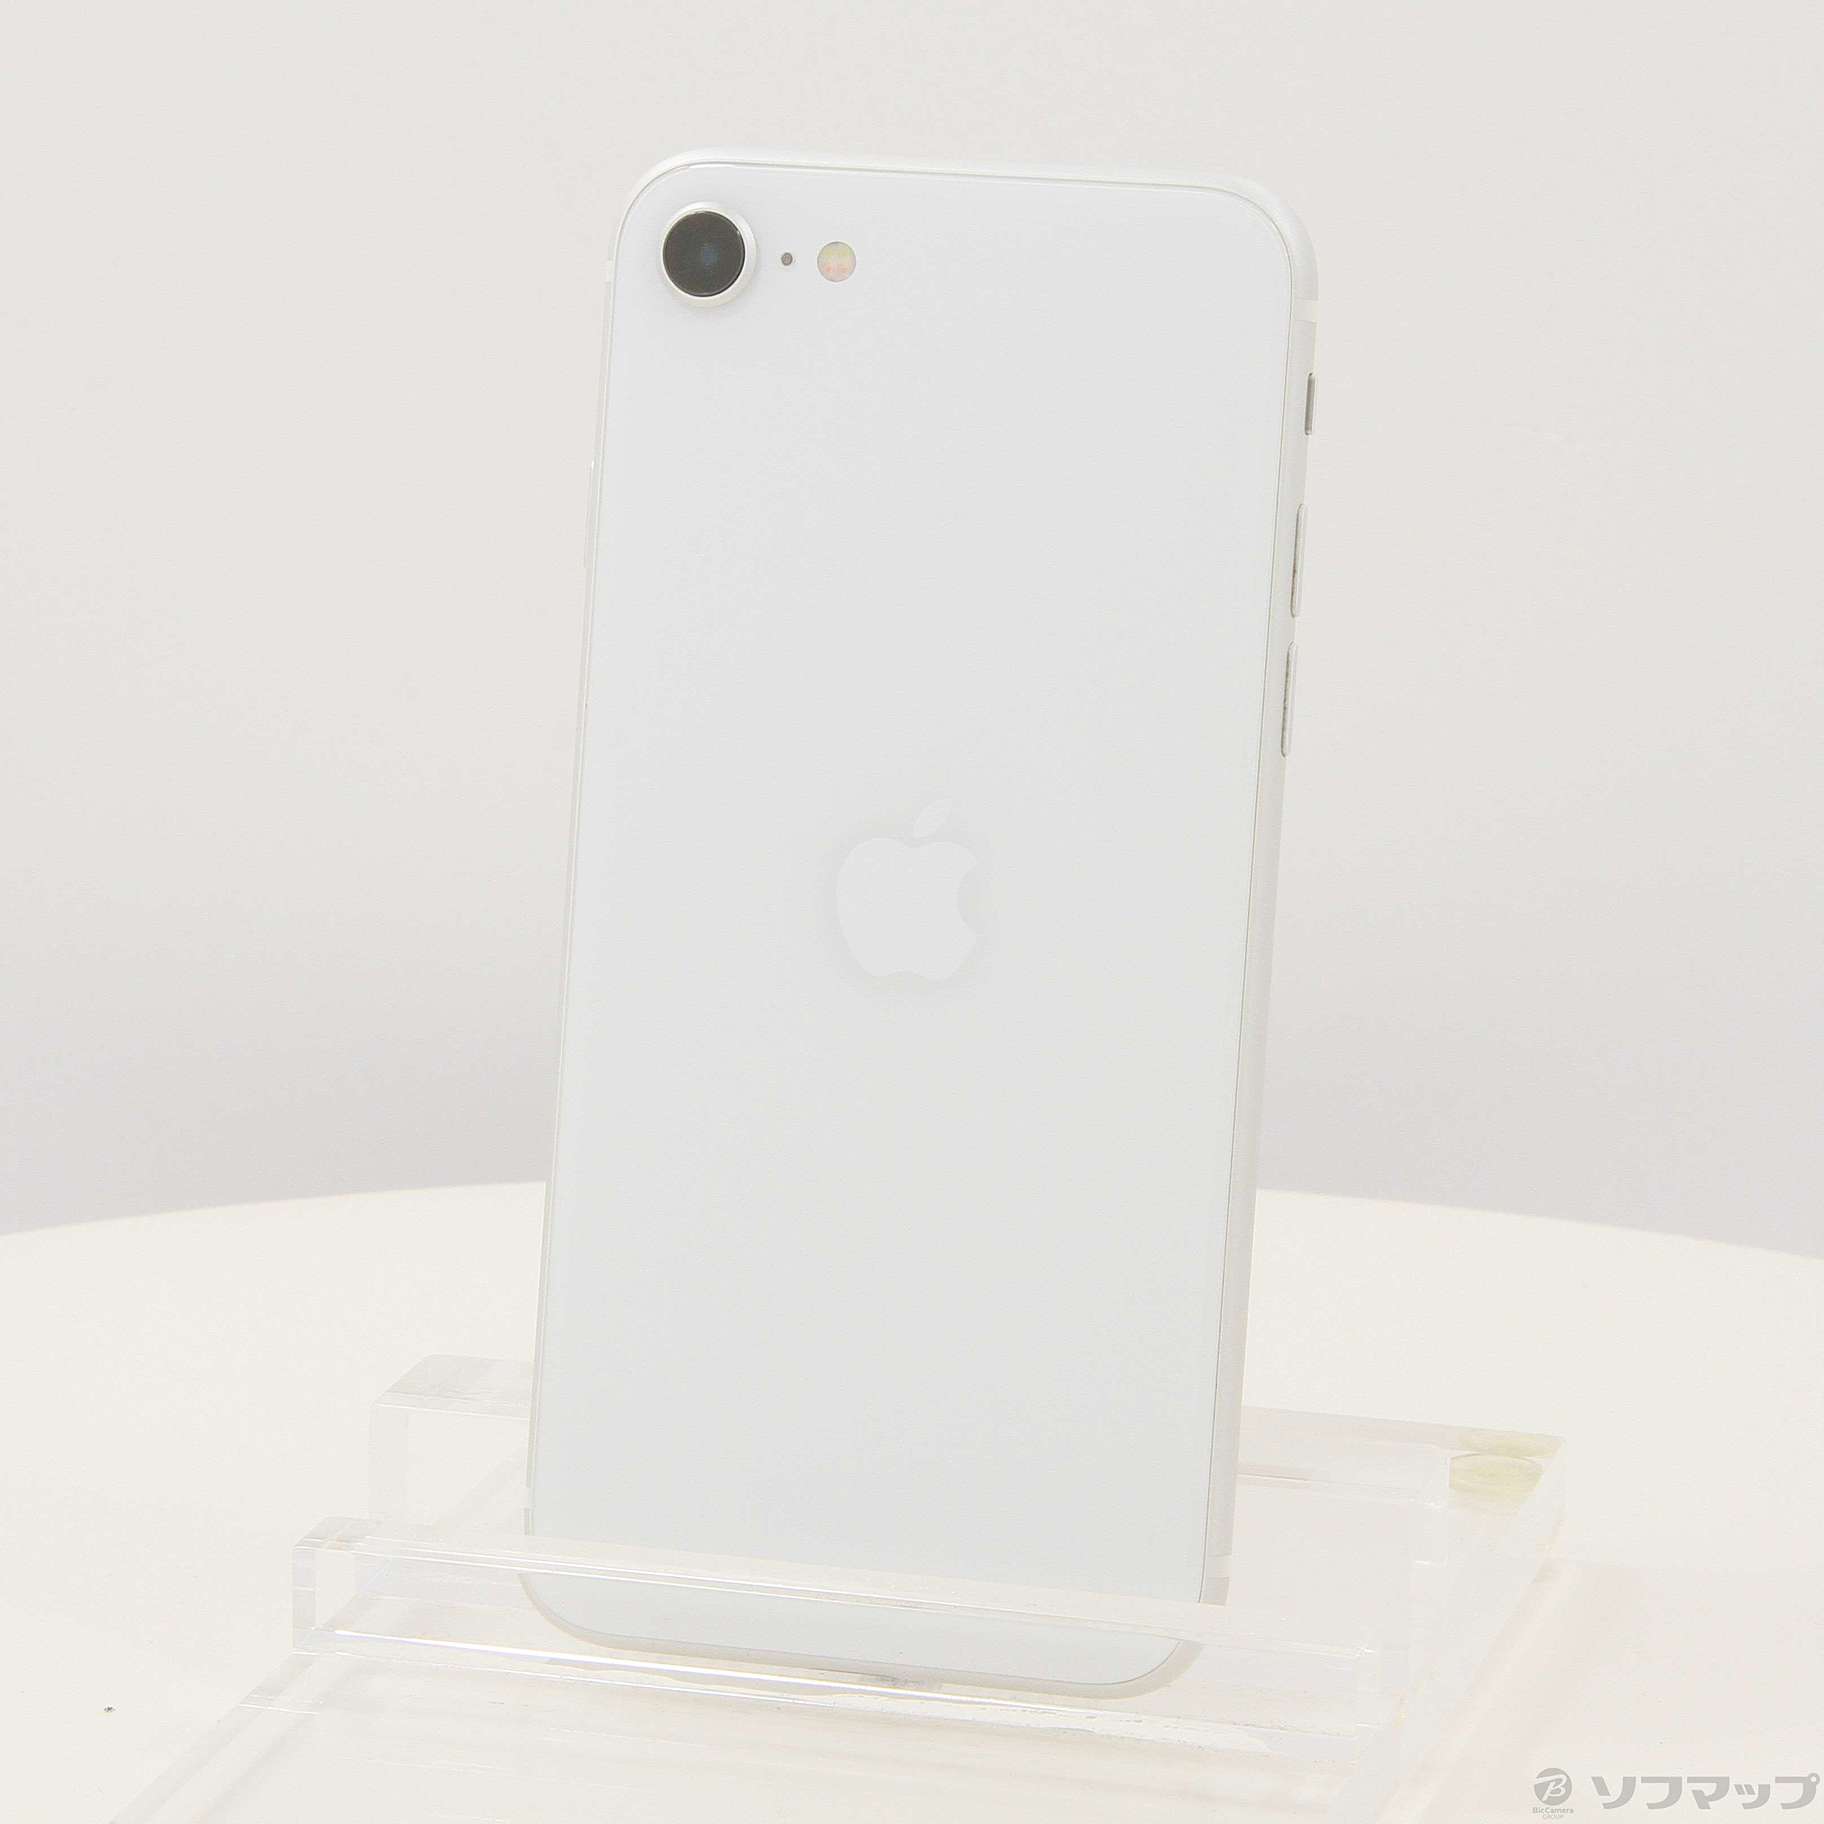 アップル iPhoneSE 第2世代 128GB ホワイト - スマートフォン本体